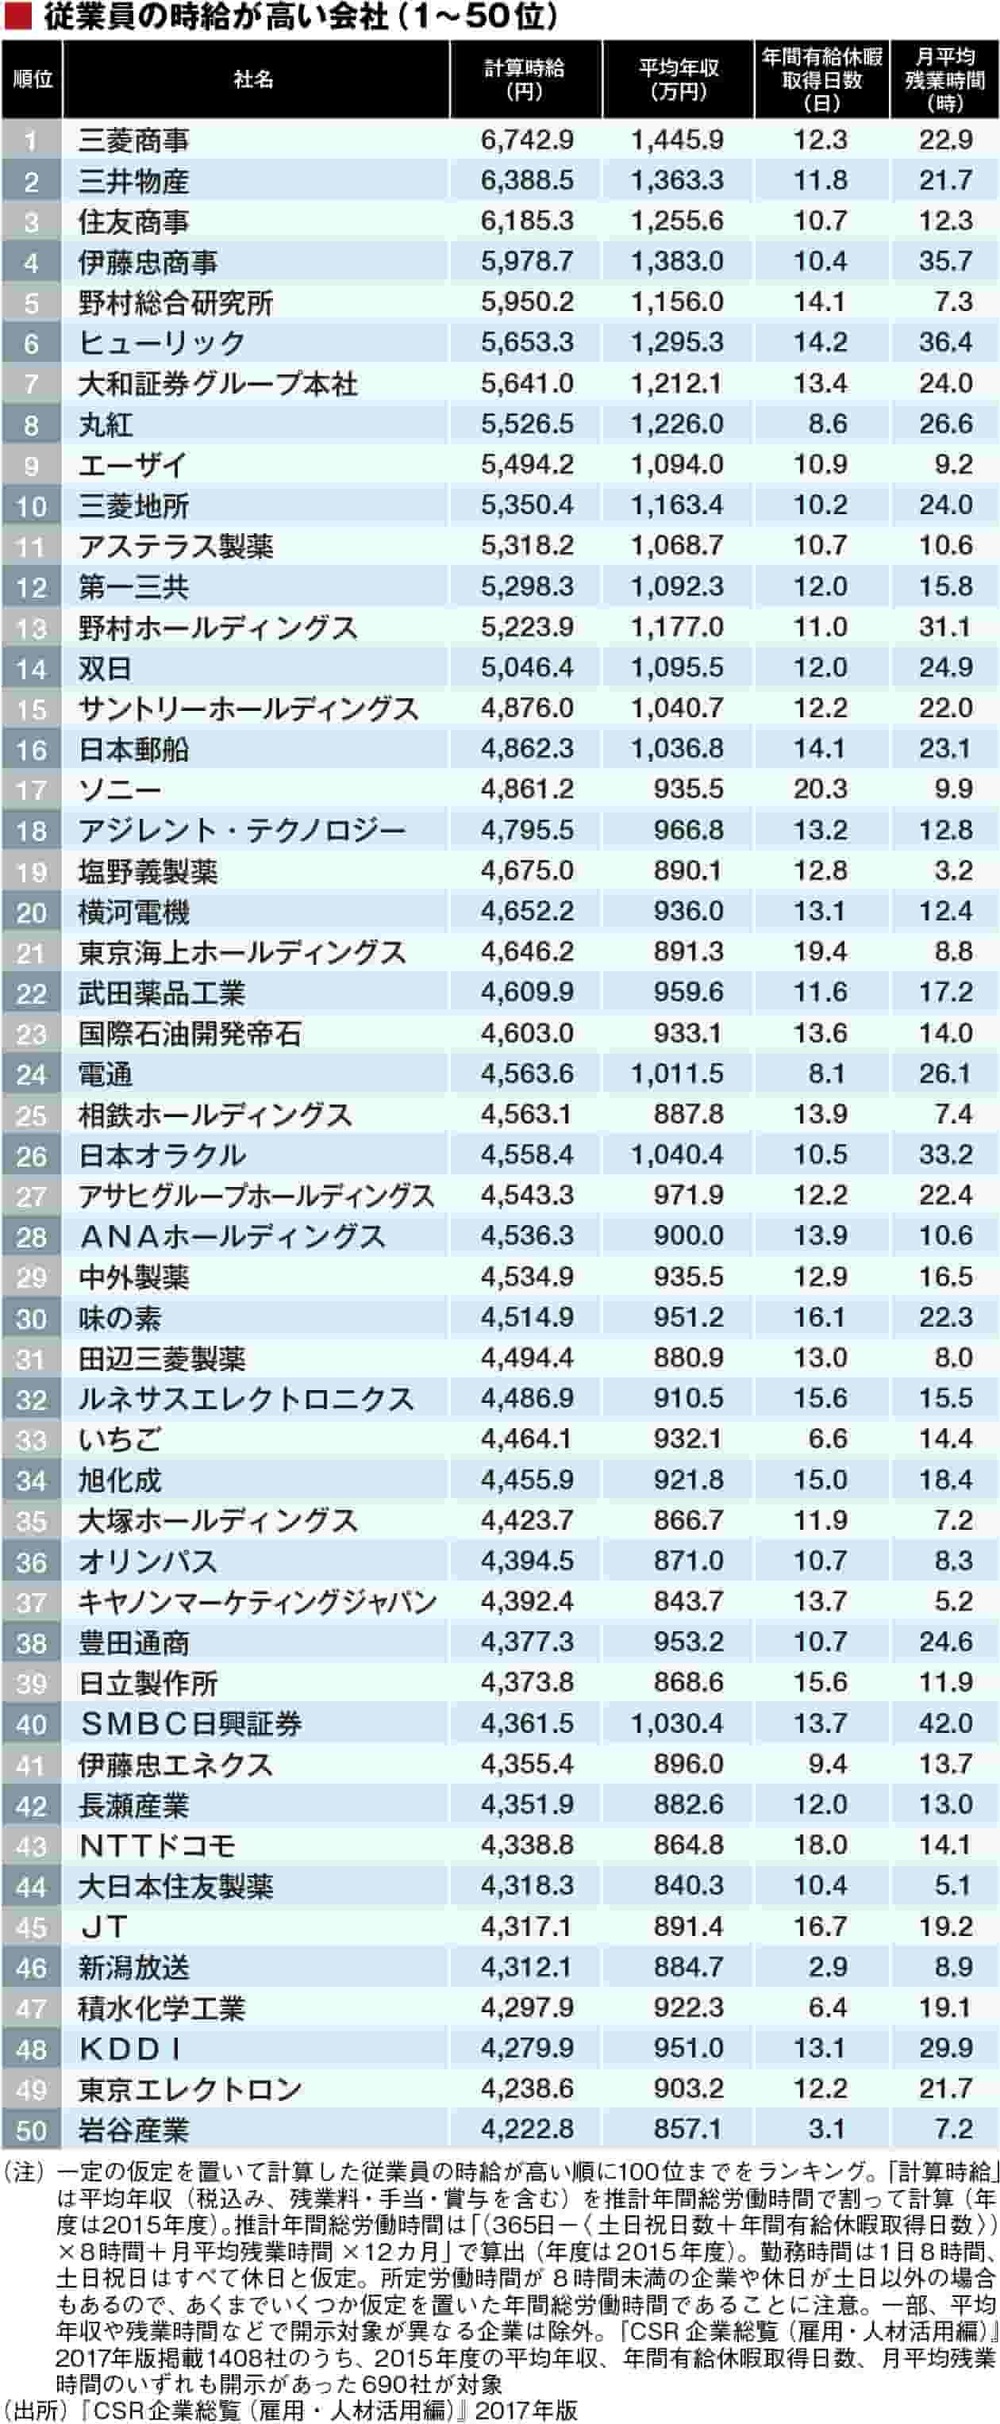 时薪排行_商社霸榜、21家企业时薪超6千日元:日企员工时薪排行Top100